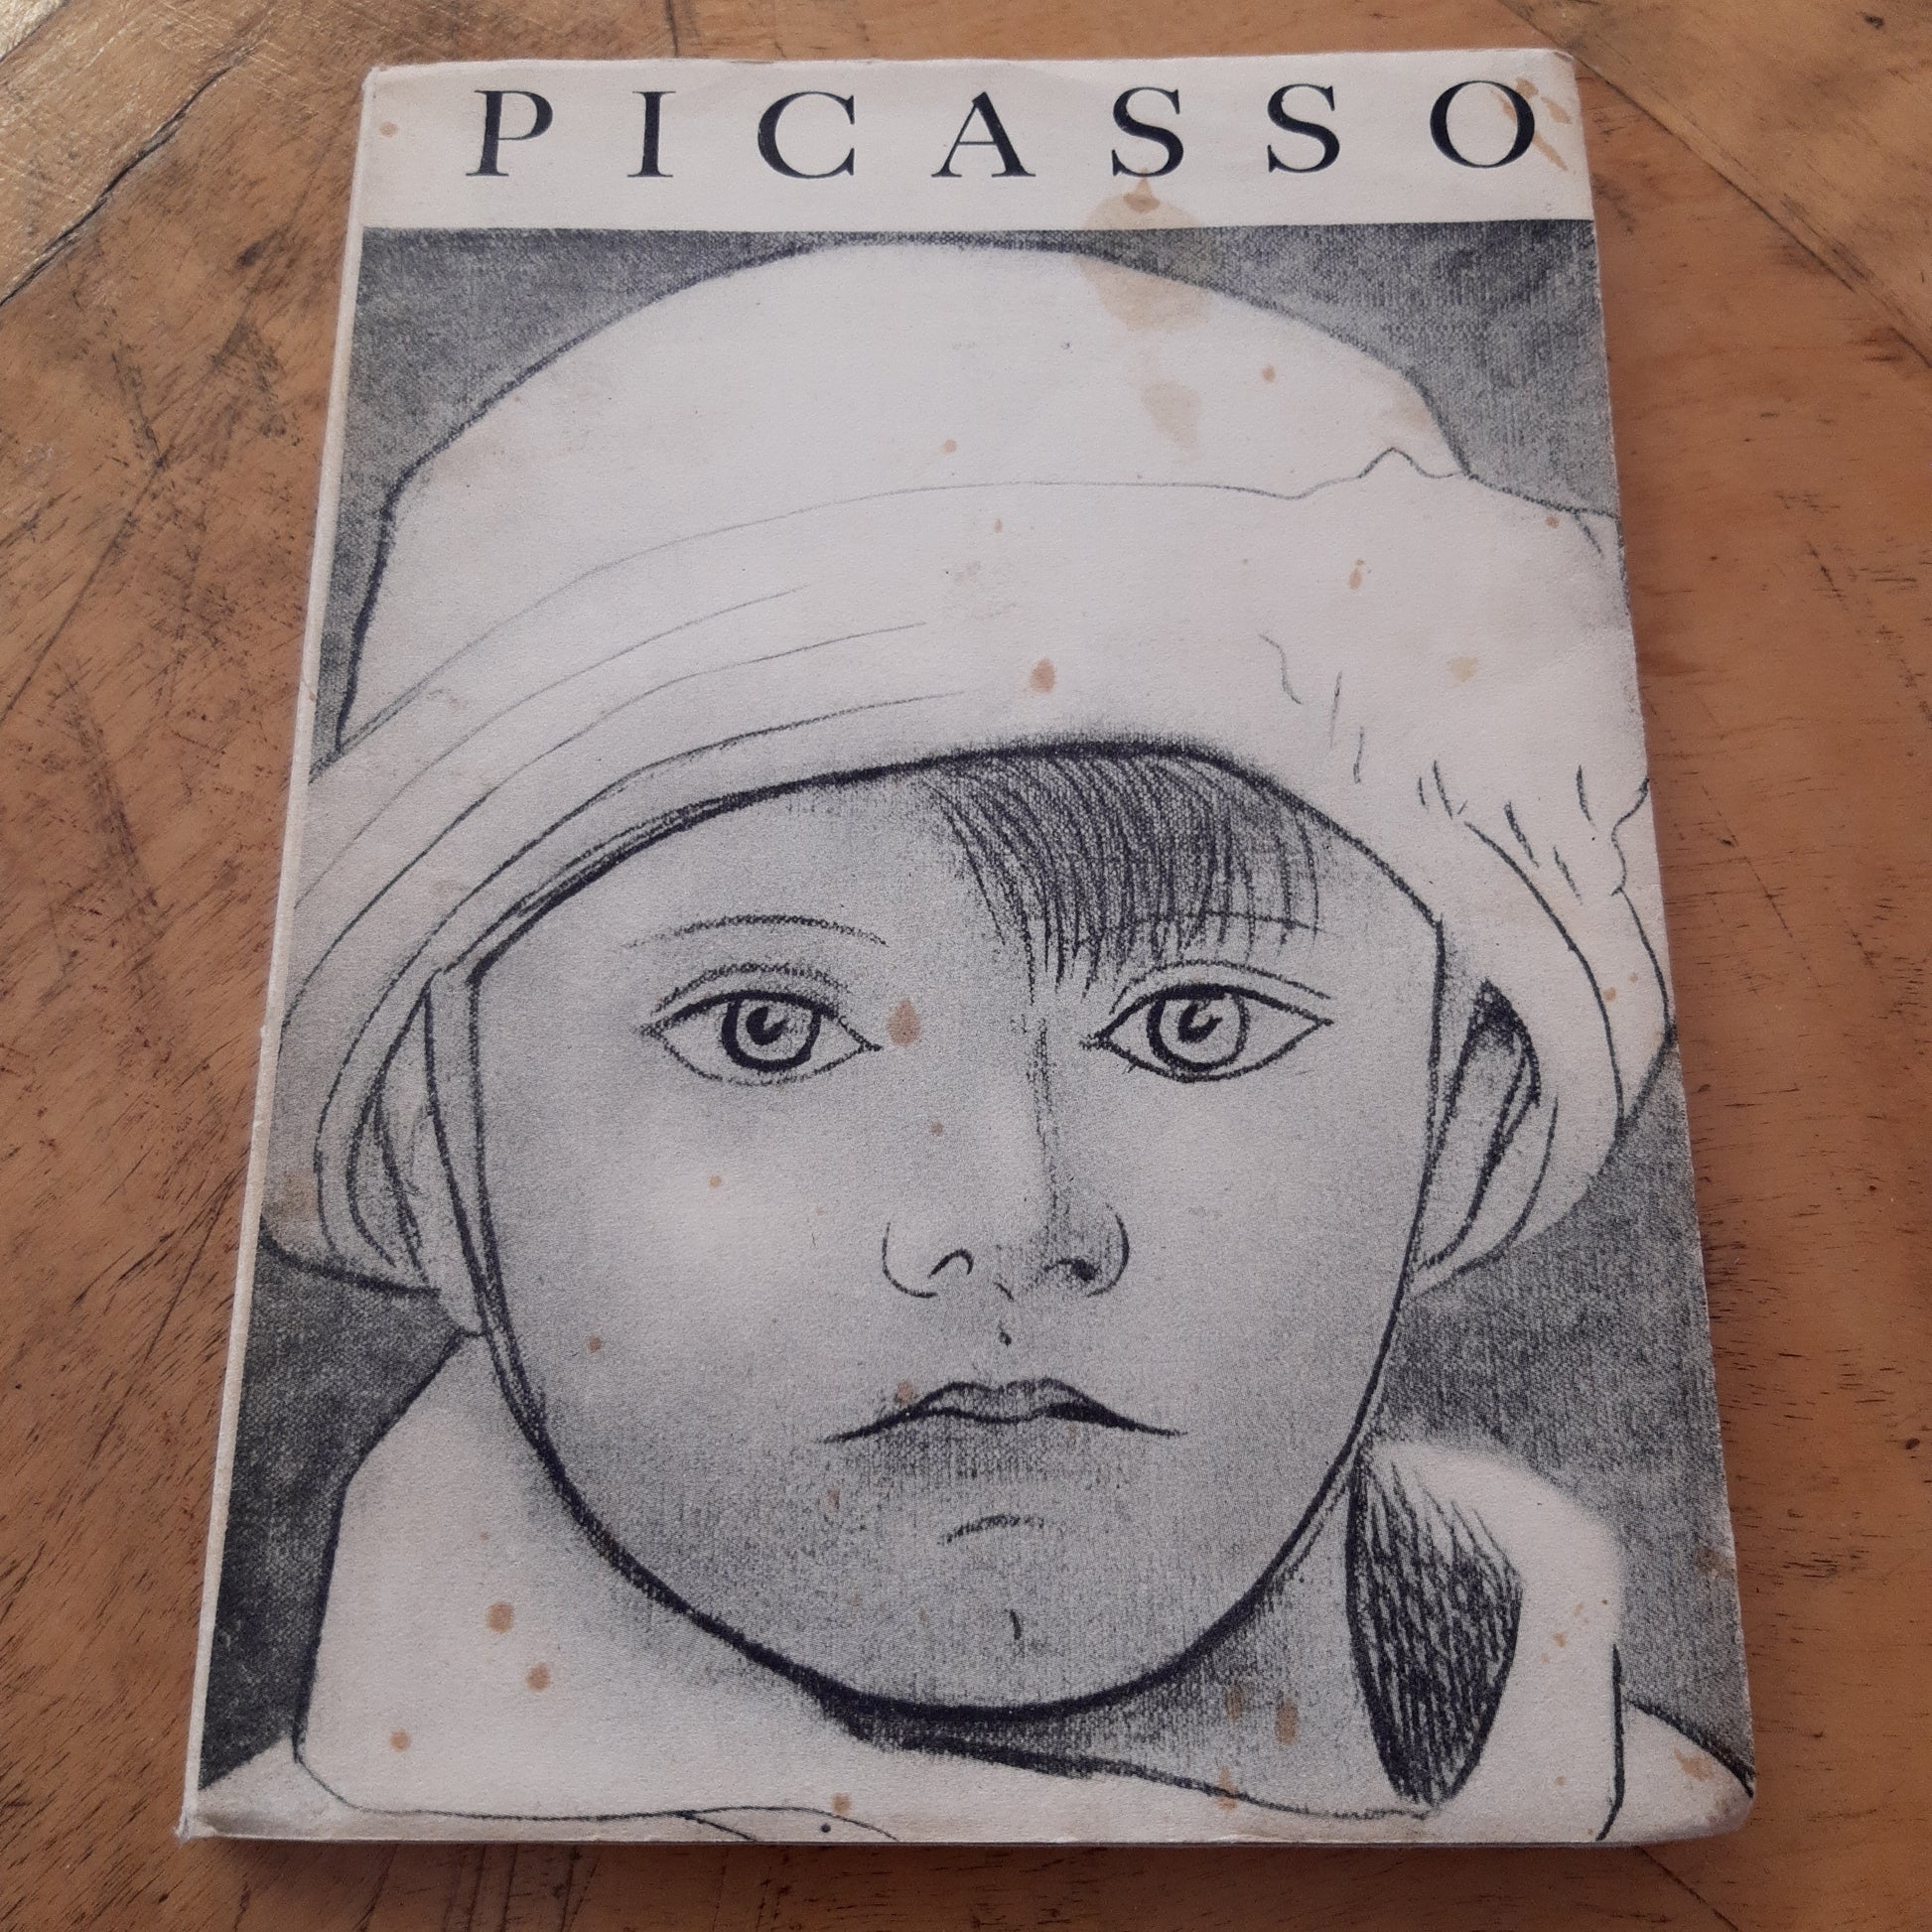 picasso - editions des deux mondes